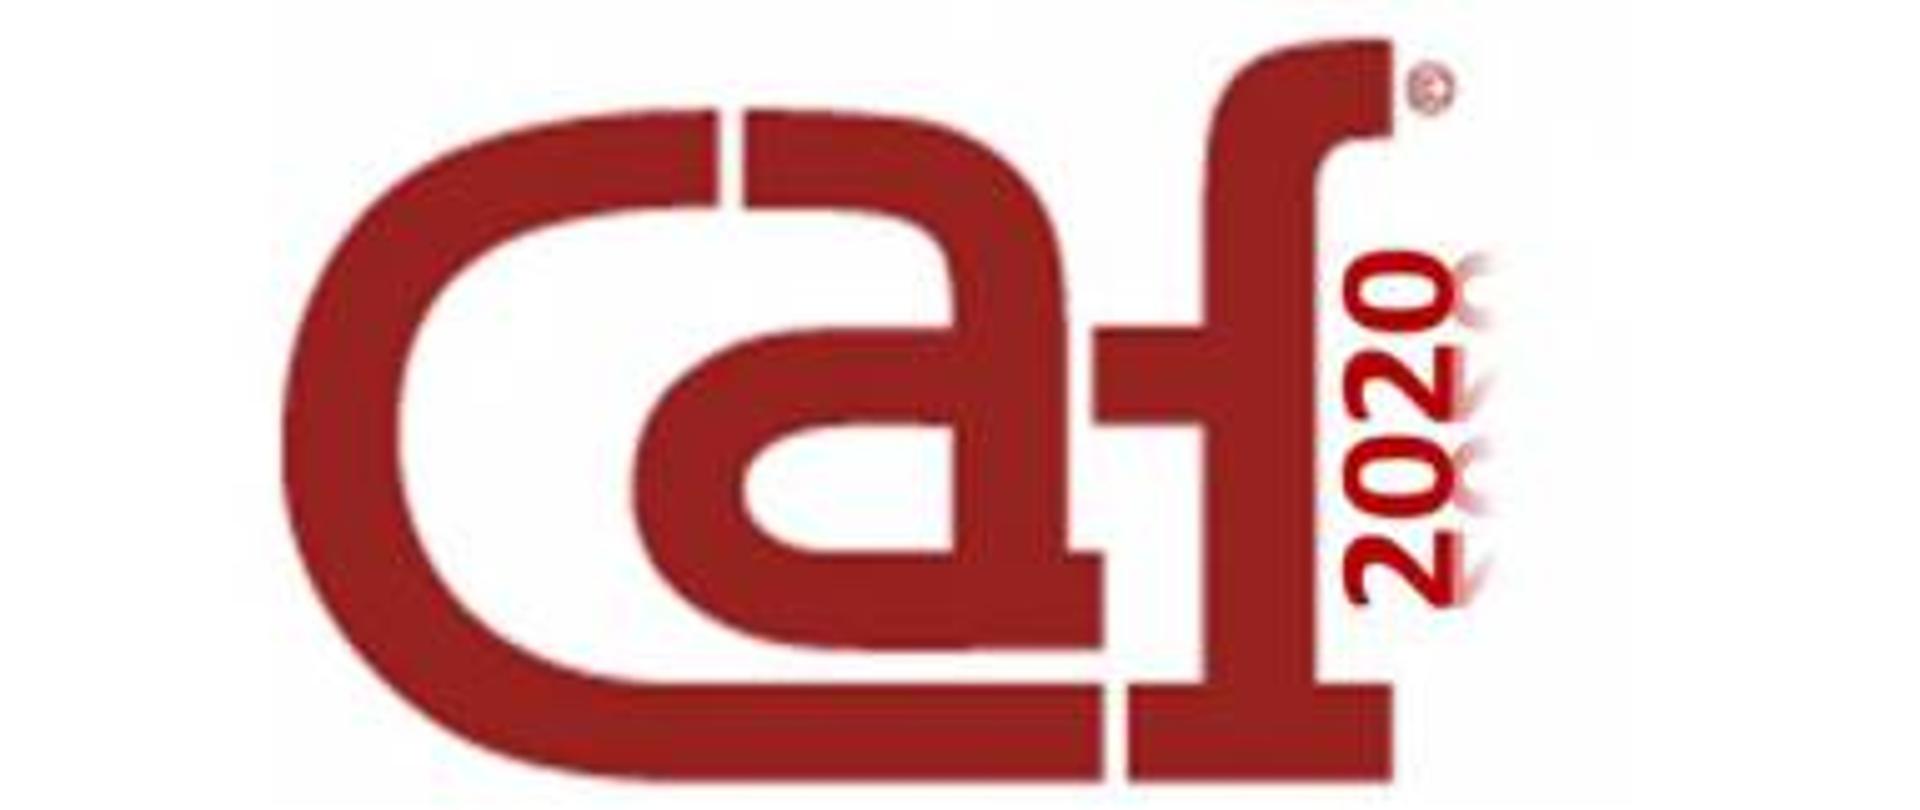 Logo CAF Panorama - na białym tle stylizowany, czerwony napis: caf, obok niego obrócona o 90 stopni przeciwnie do ruchu wskazówek zegara liczba 2020